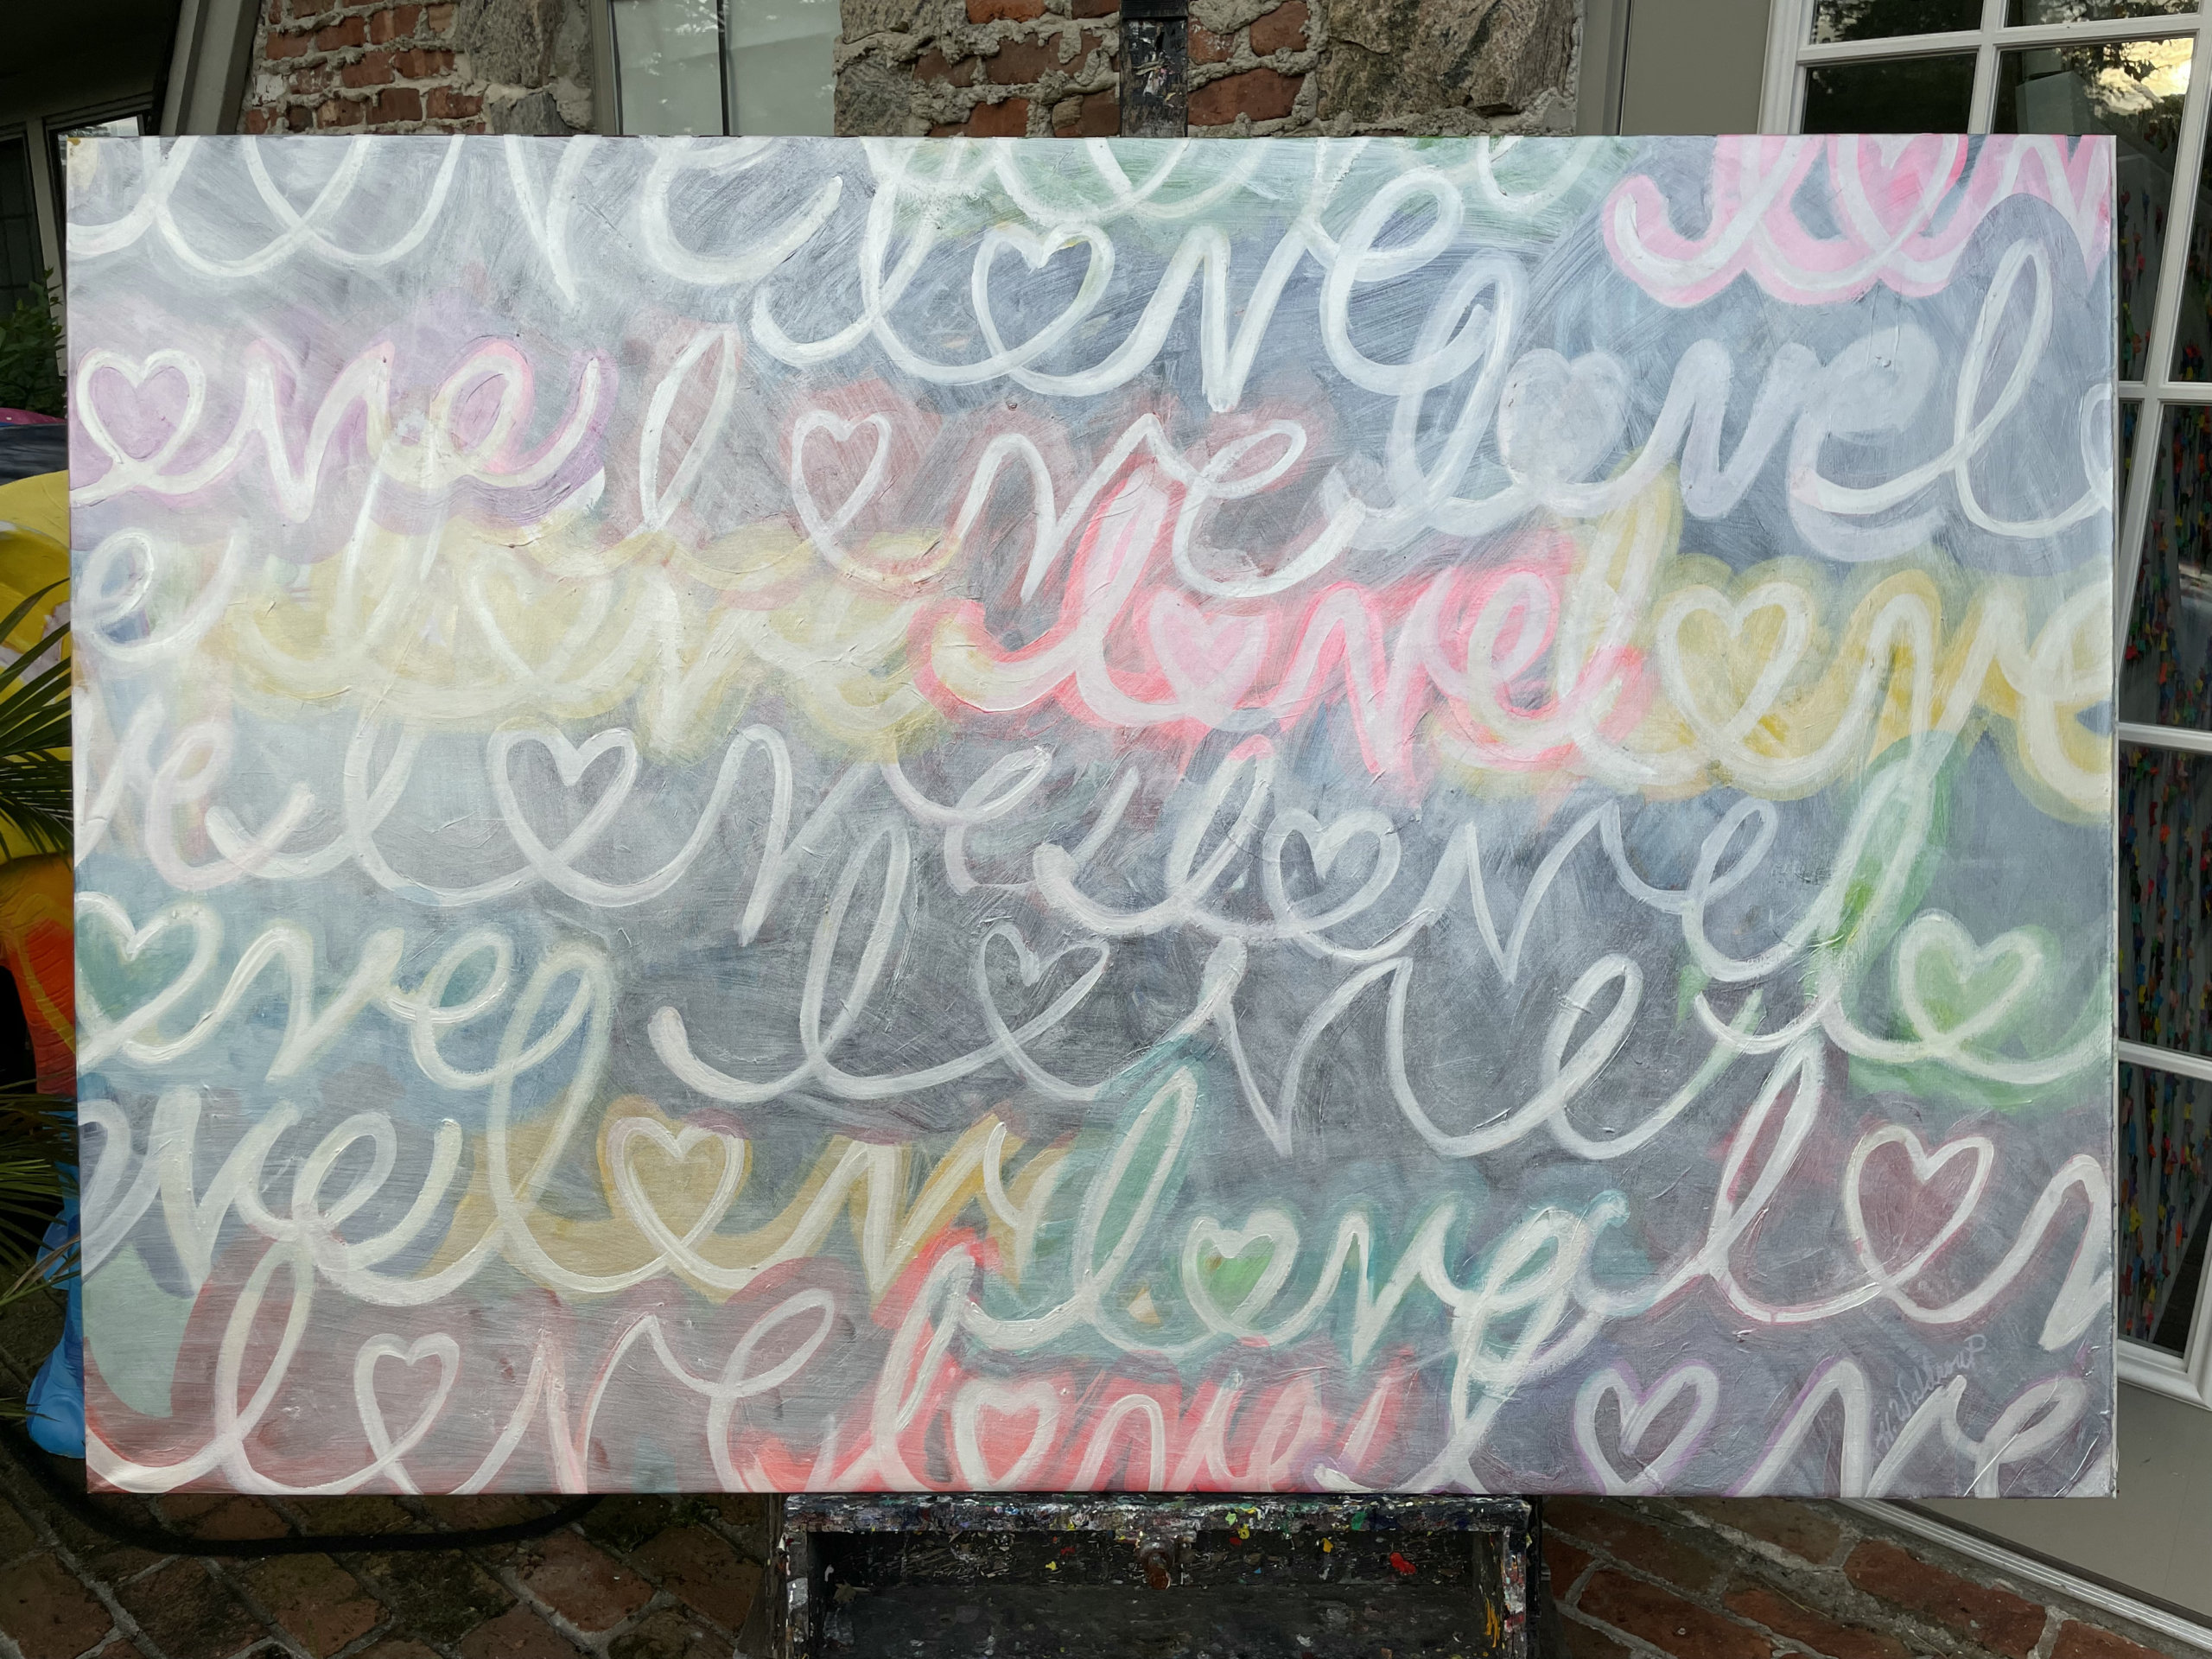 "Graffiti Love" by Hulbert Waldroup at the Art Warehouse of Southampton